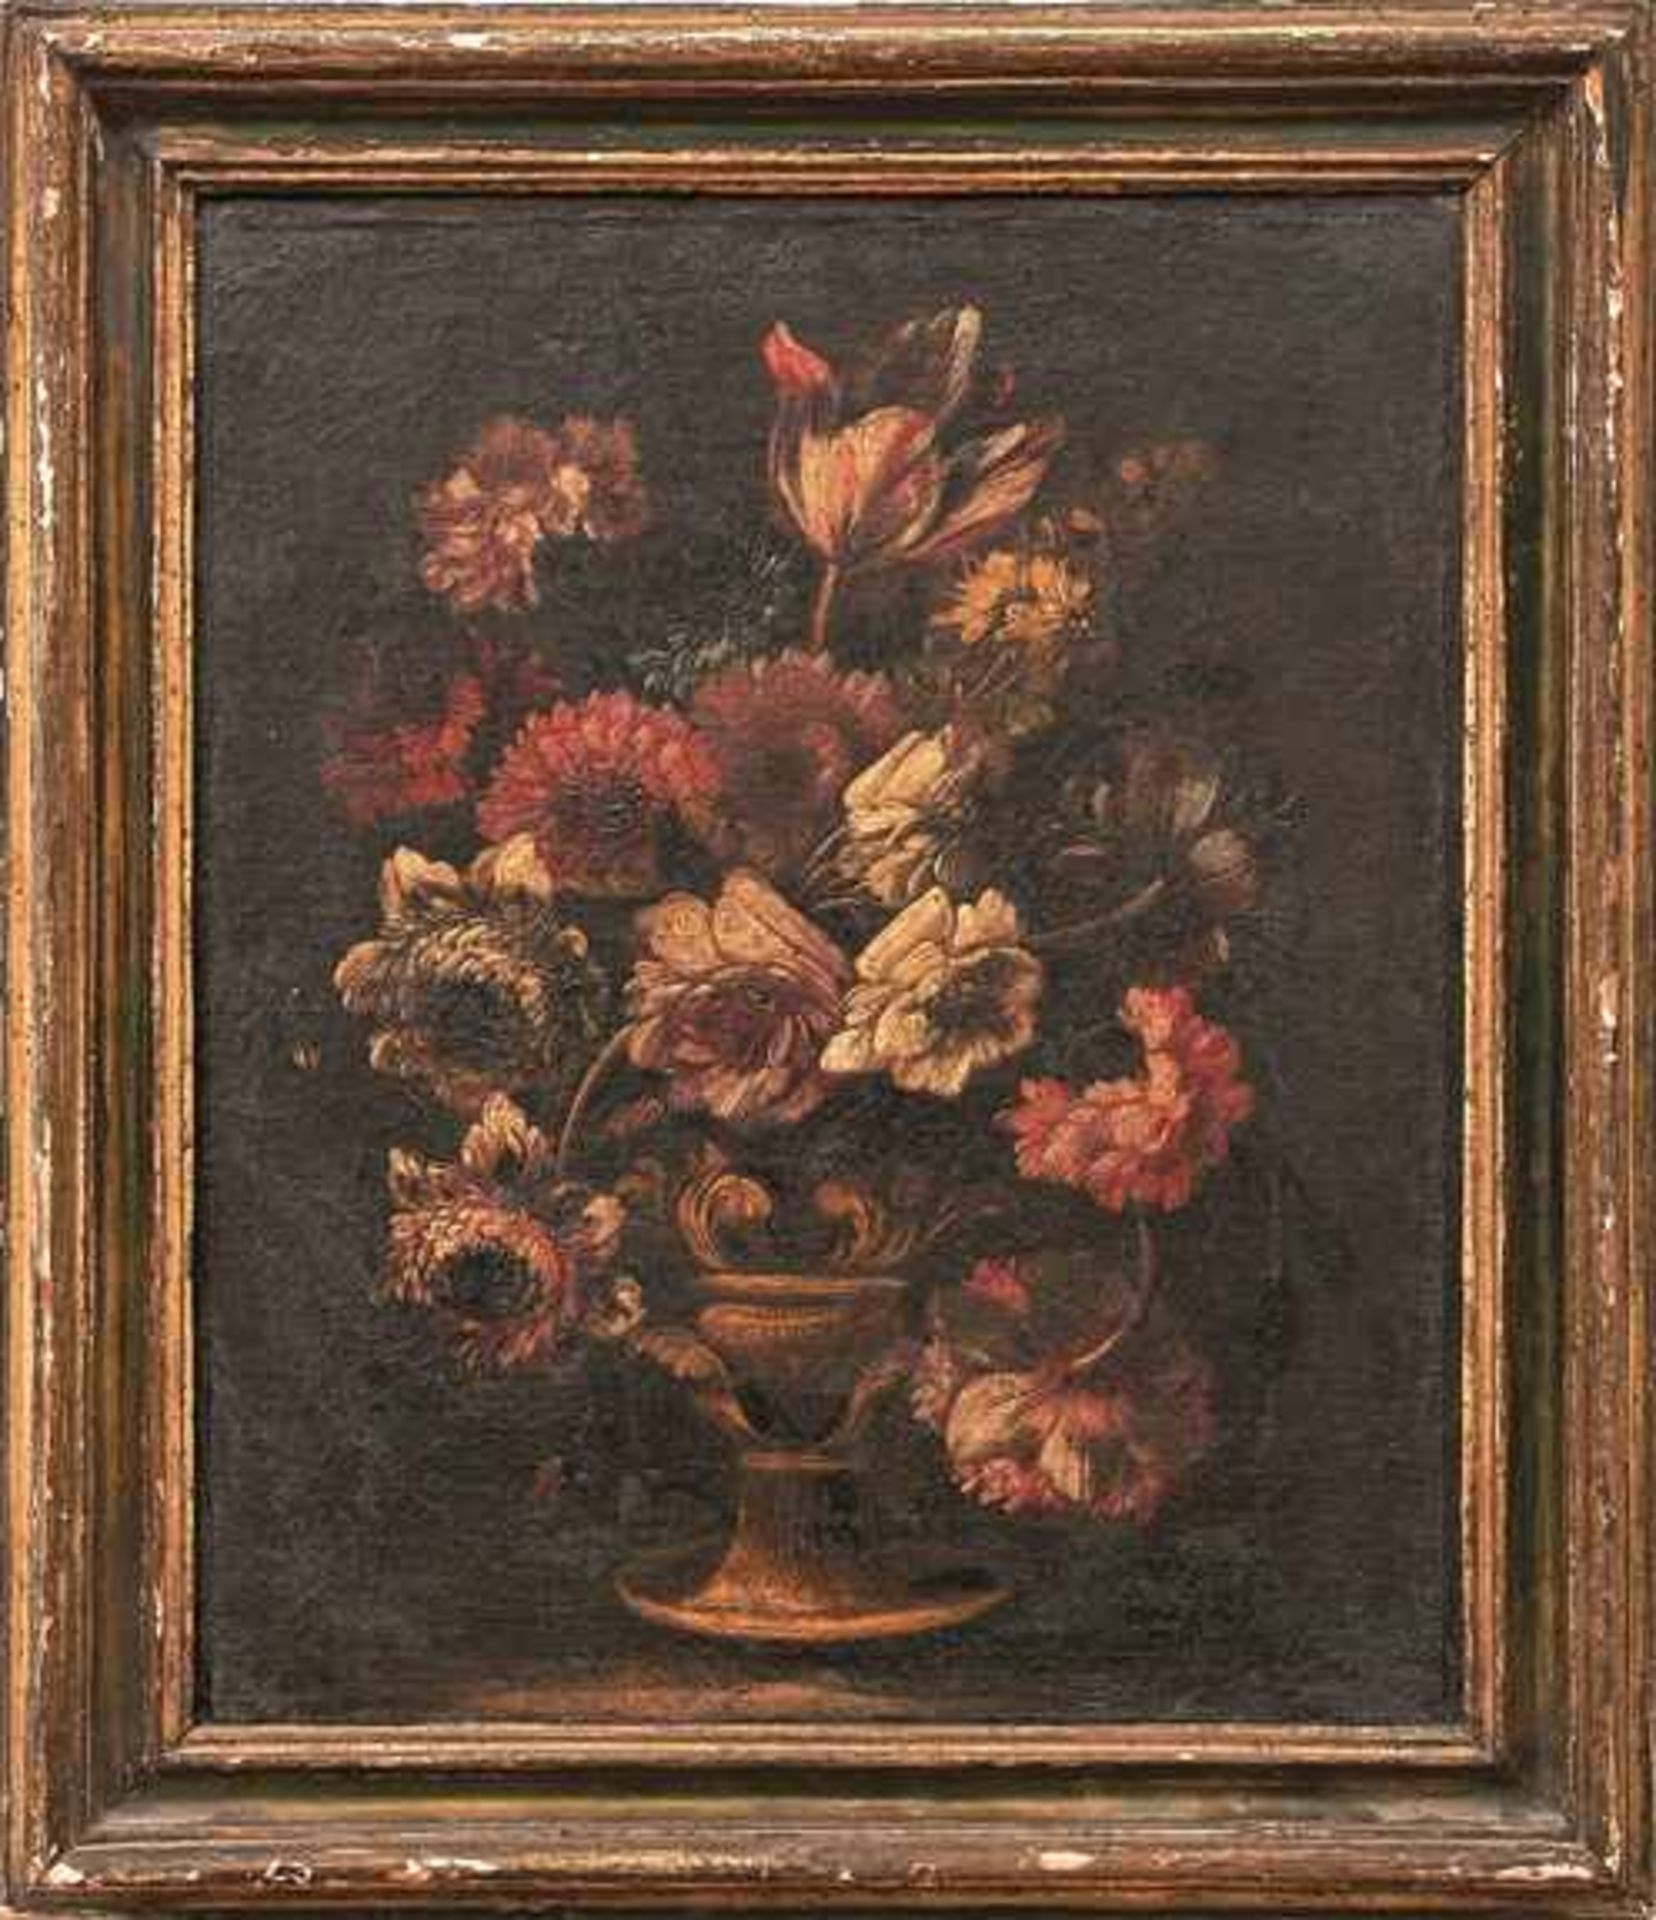 Satz von drei Blumenstillleben Neapolitanische Schule um 1700 Öl/Lwd. 43 x 36 cm. - Dieses Los wurde